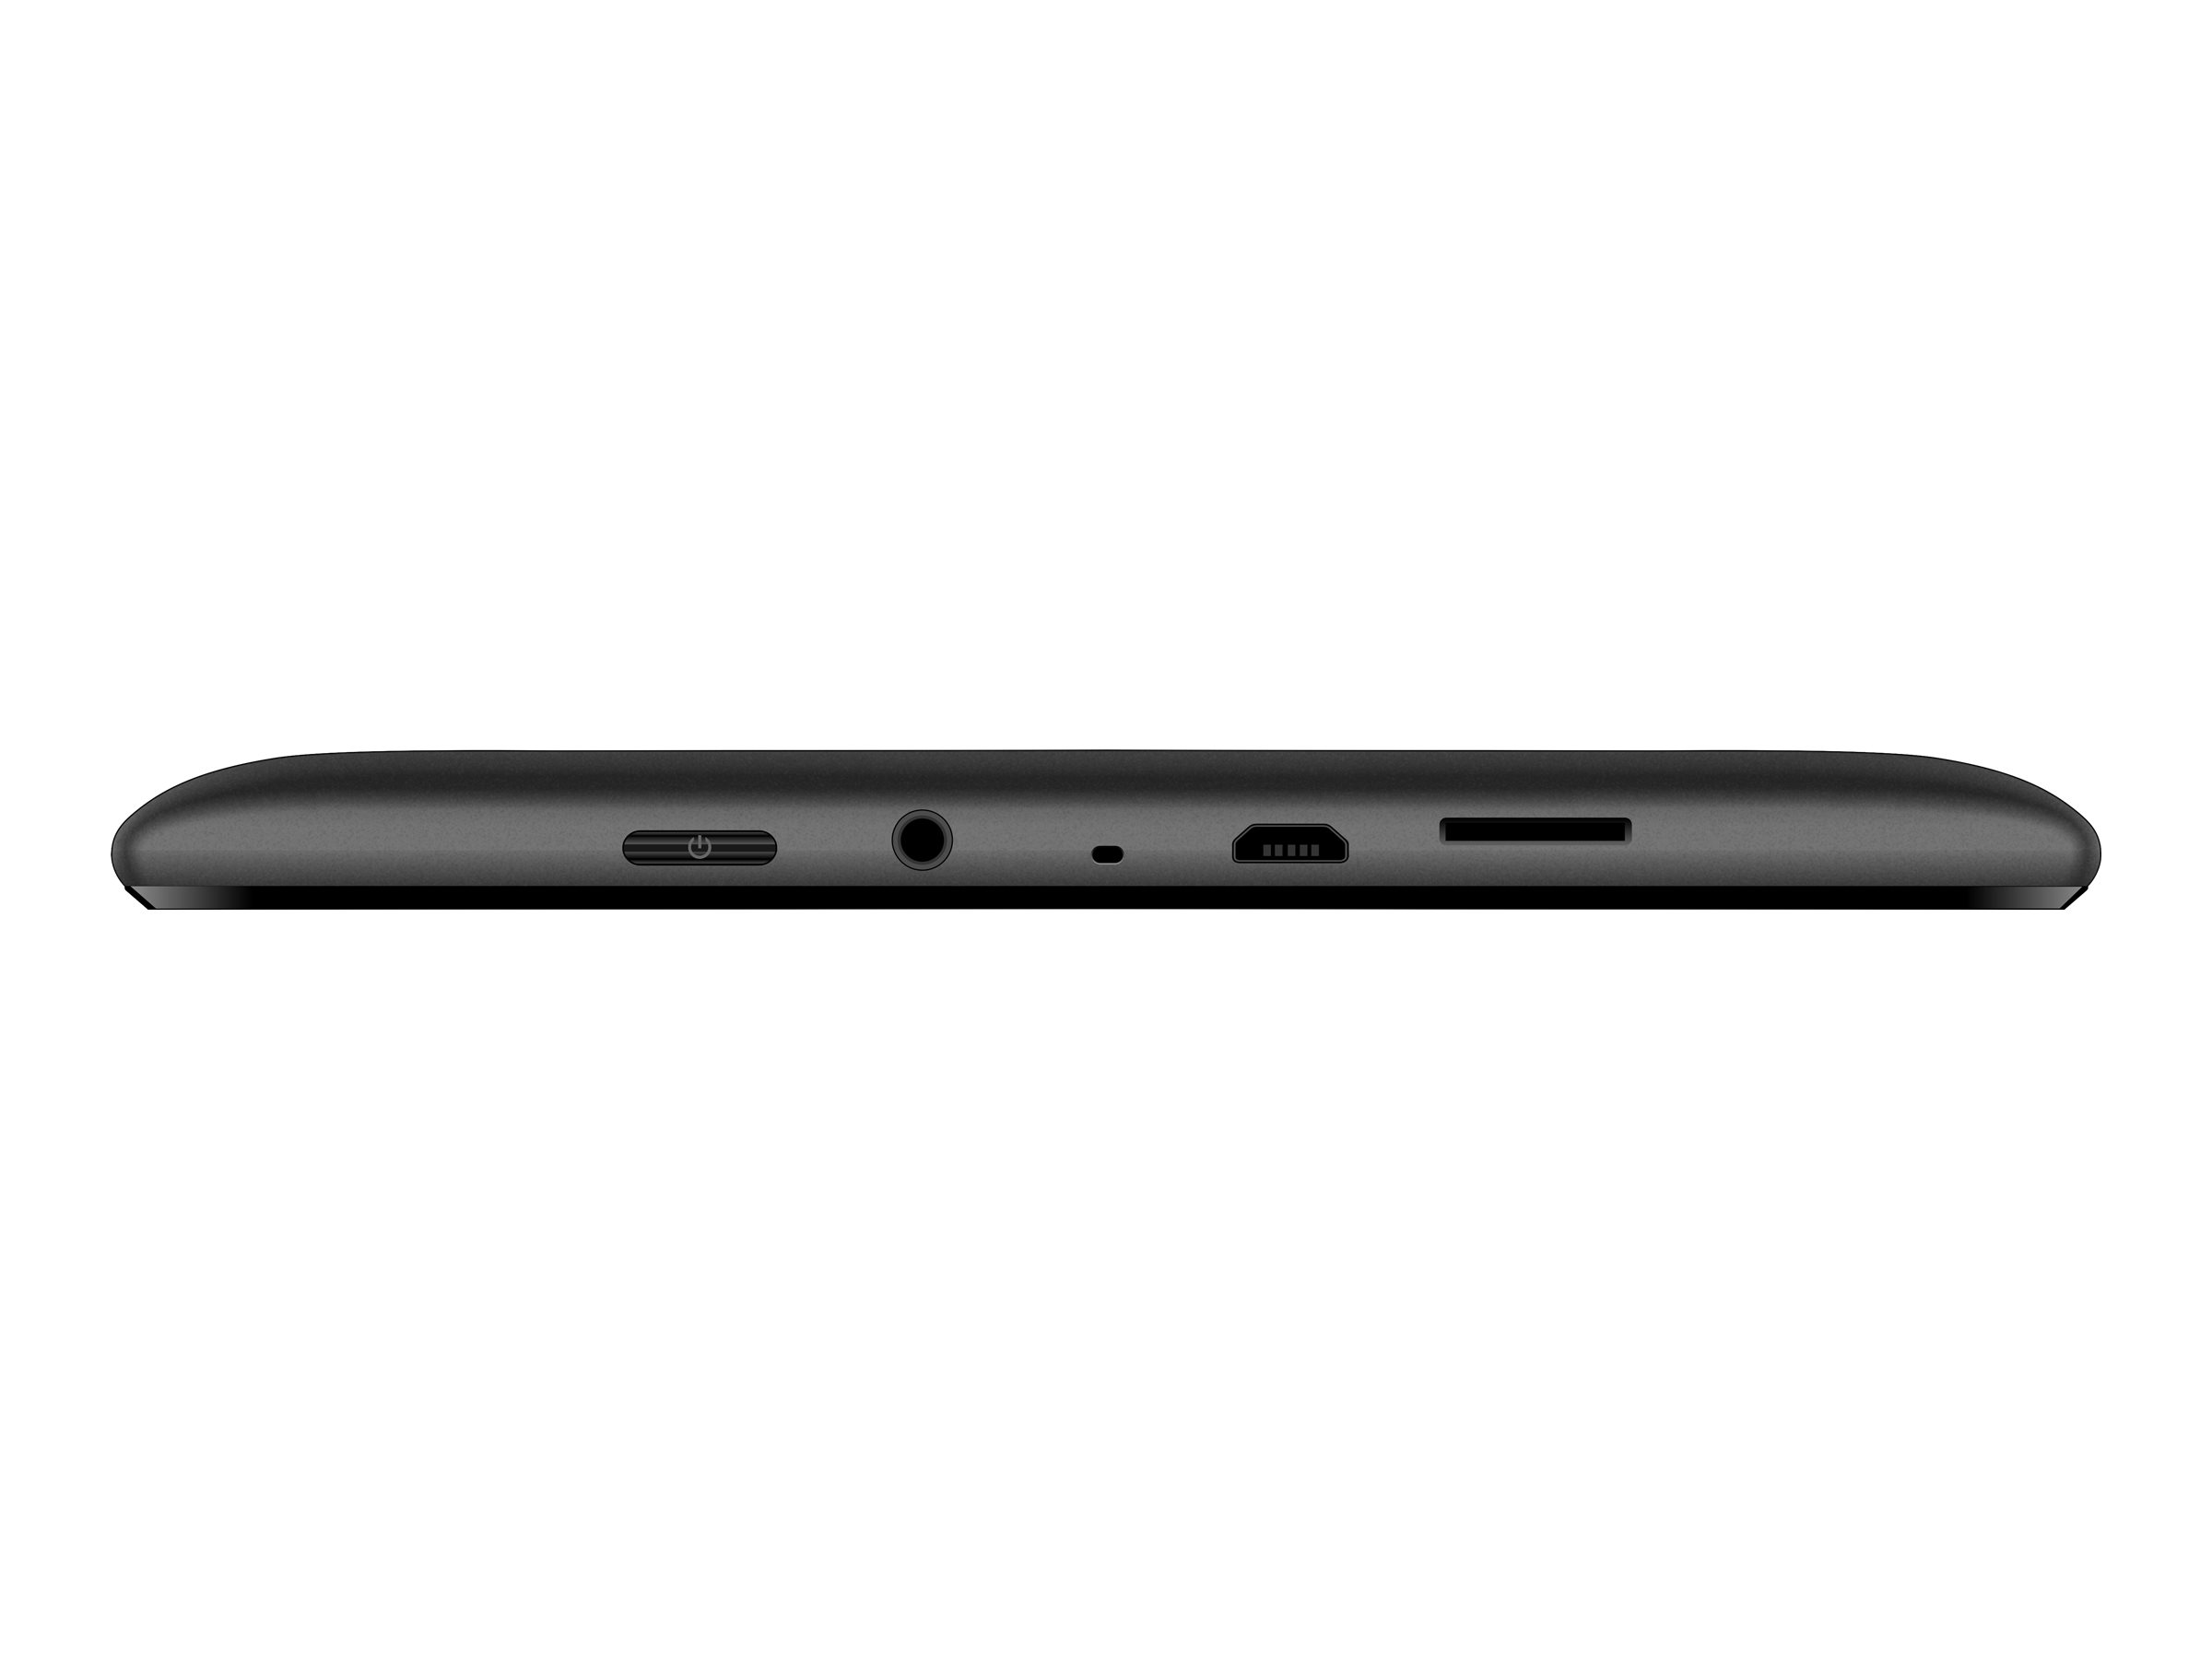 Hisense Sero 8 - Tablet - Android 4.4 (KitKat) - 16 GB - 8" (1280 x 800) - USB host - microSD slot - image 4 of 6